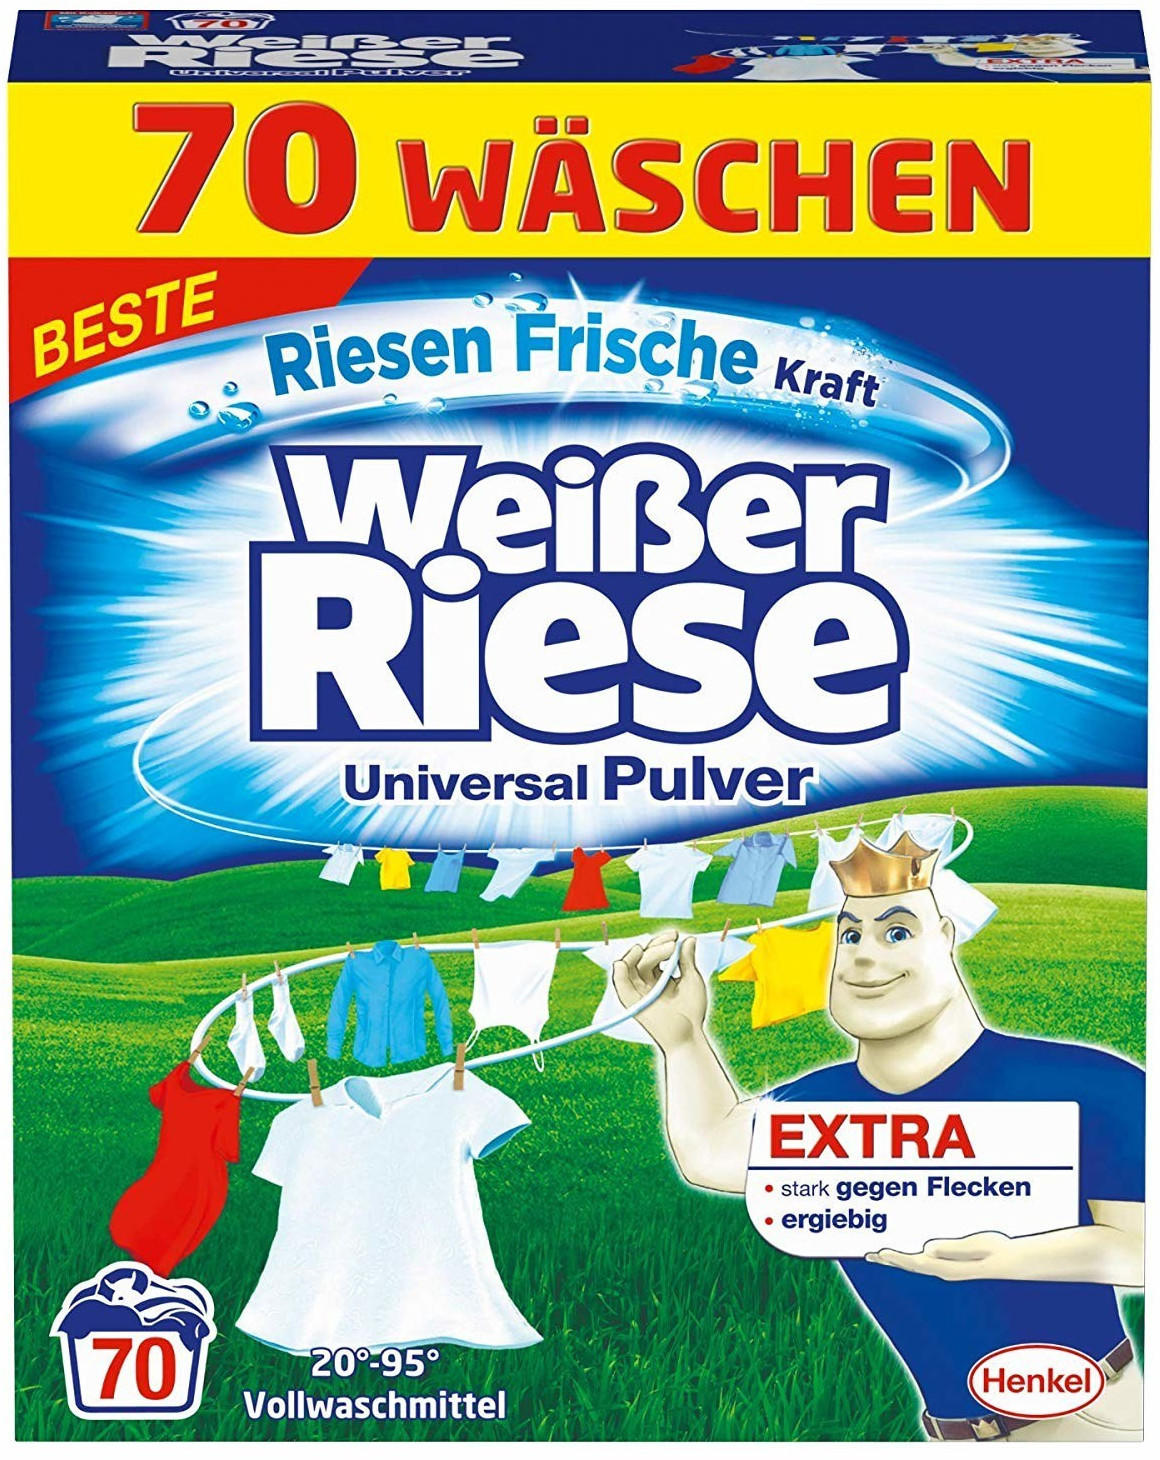 Weißer Riese KraftPulver (70 WL) Test ❤️ Jetzt ab 19,99 € (Mai 2022)  Testbericht.de